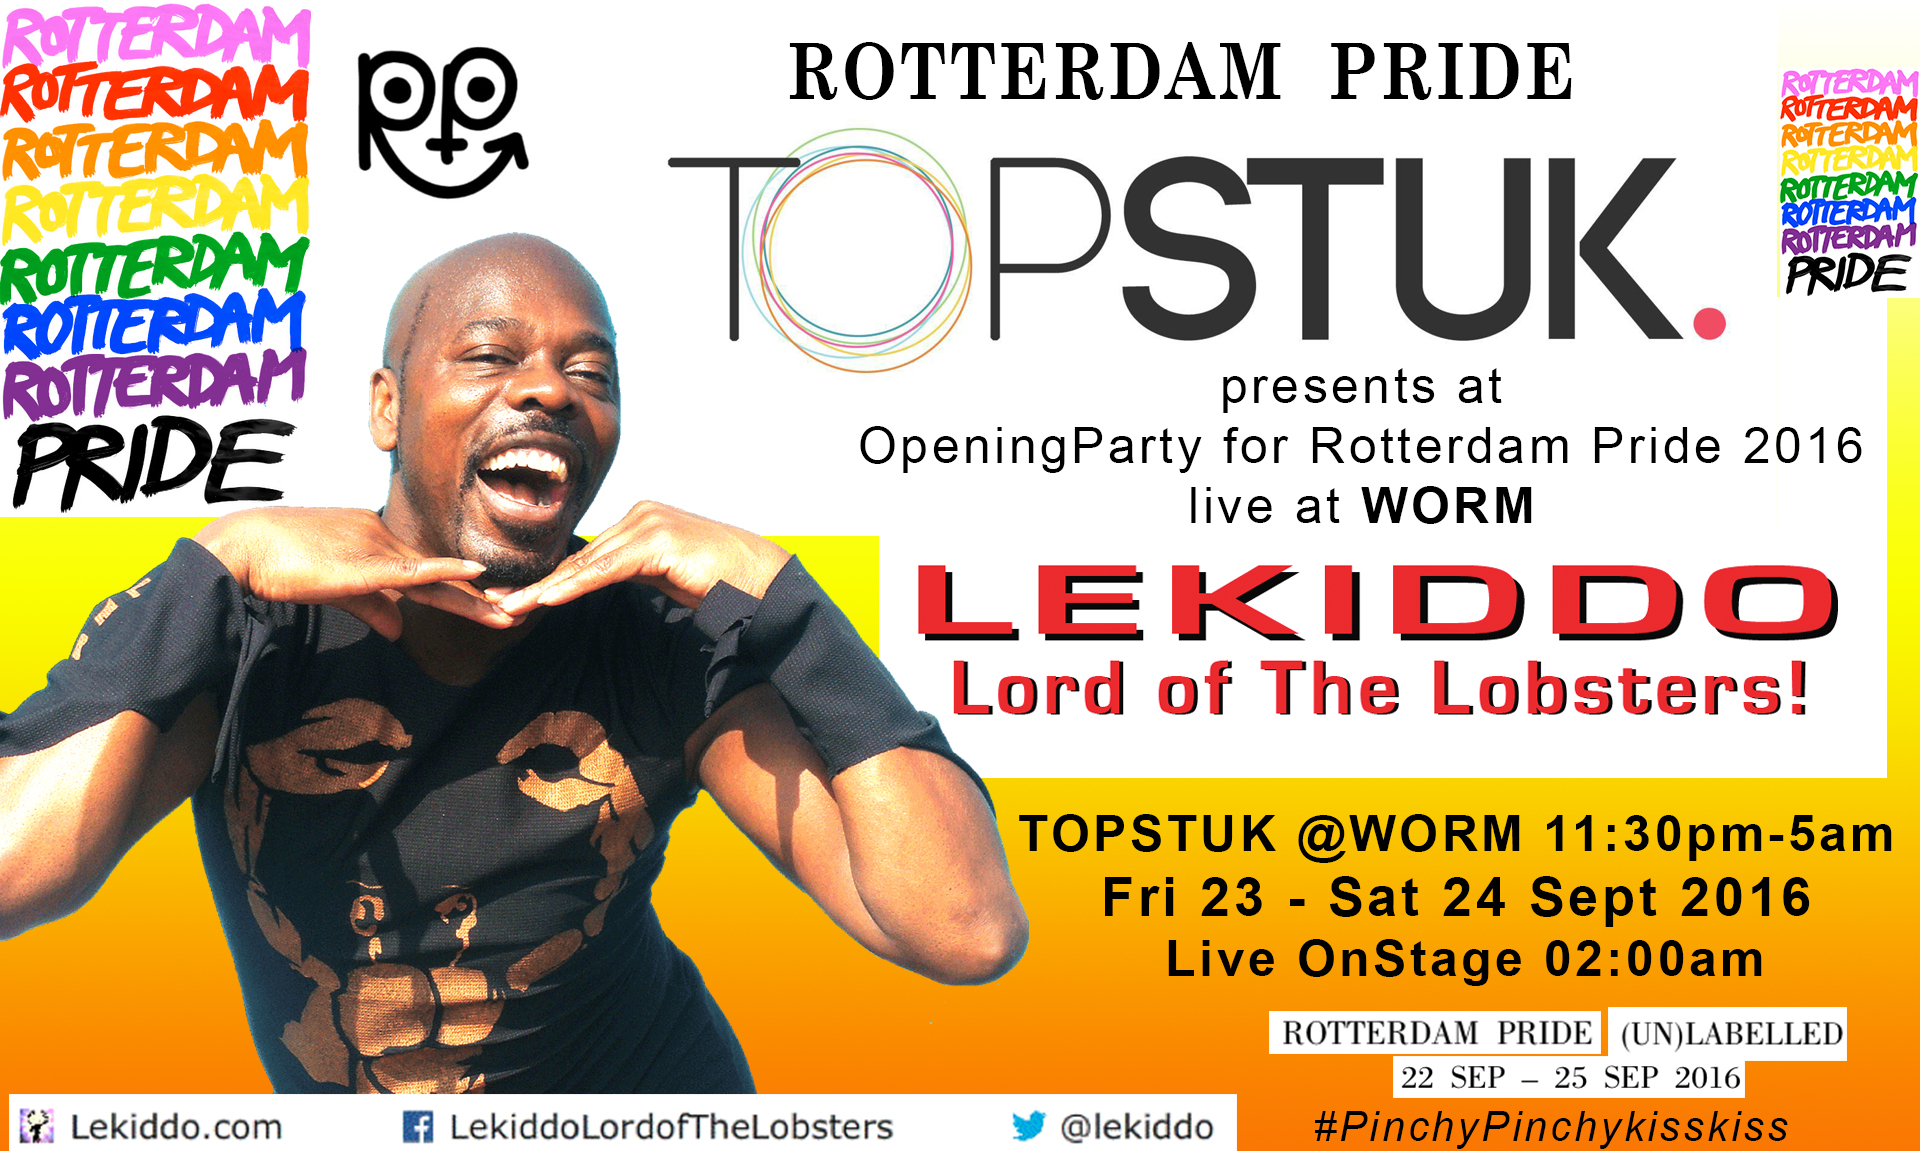 LEKIDDO - Lord of The Lobsters! live at Rotterdam Pride, Friday 23 Sept 2016, at Schouwburgplein, Rotterdam, Netherlands  #PinchyPinchykisskiss